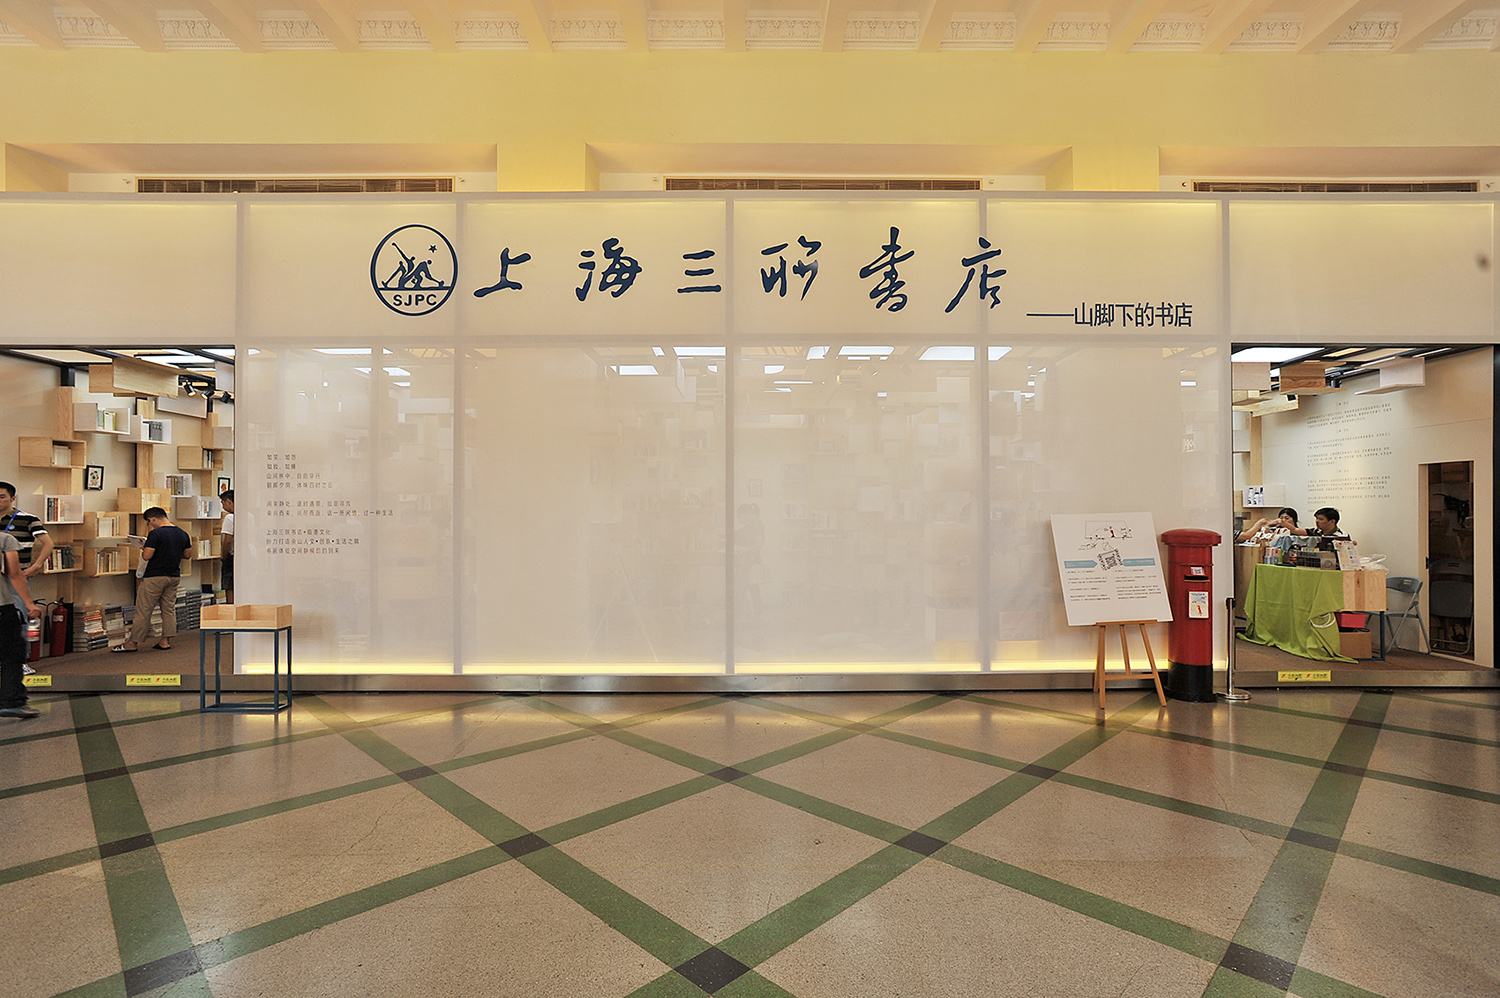 三联书店在上海佘山玩儿了一次“设计快闪”